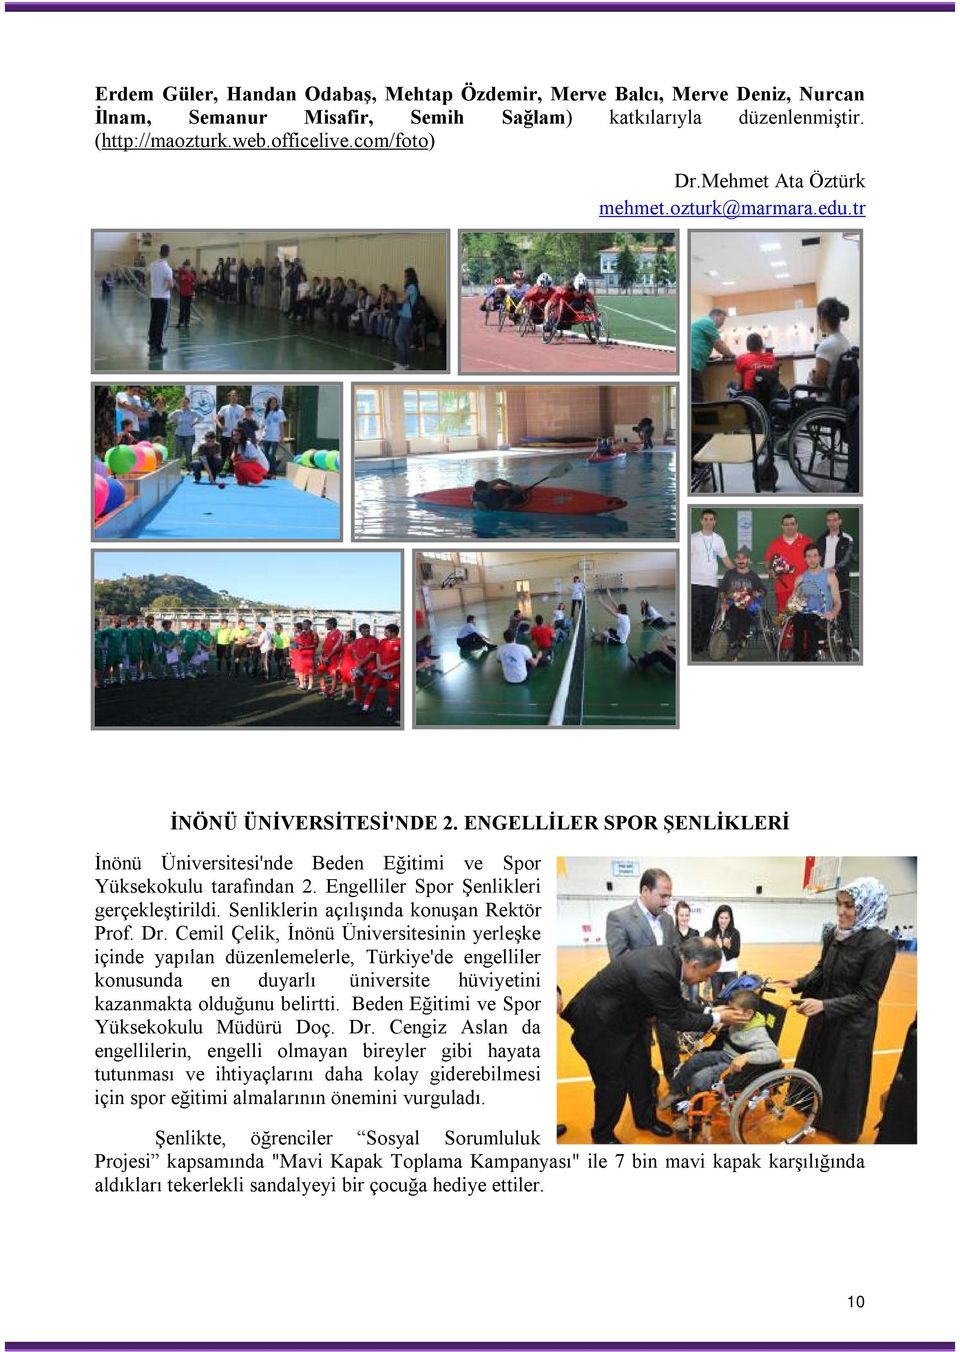 Engelliler Spor Şenlikleri gerçekleştirildi. Senliklerin açılışında konuşan Rektör Prof. Dr.